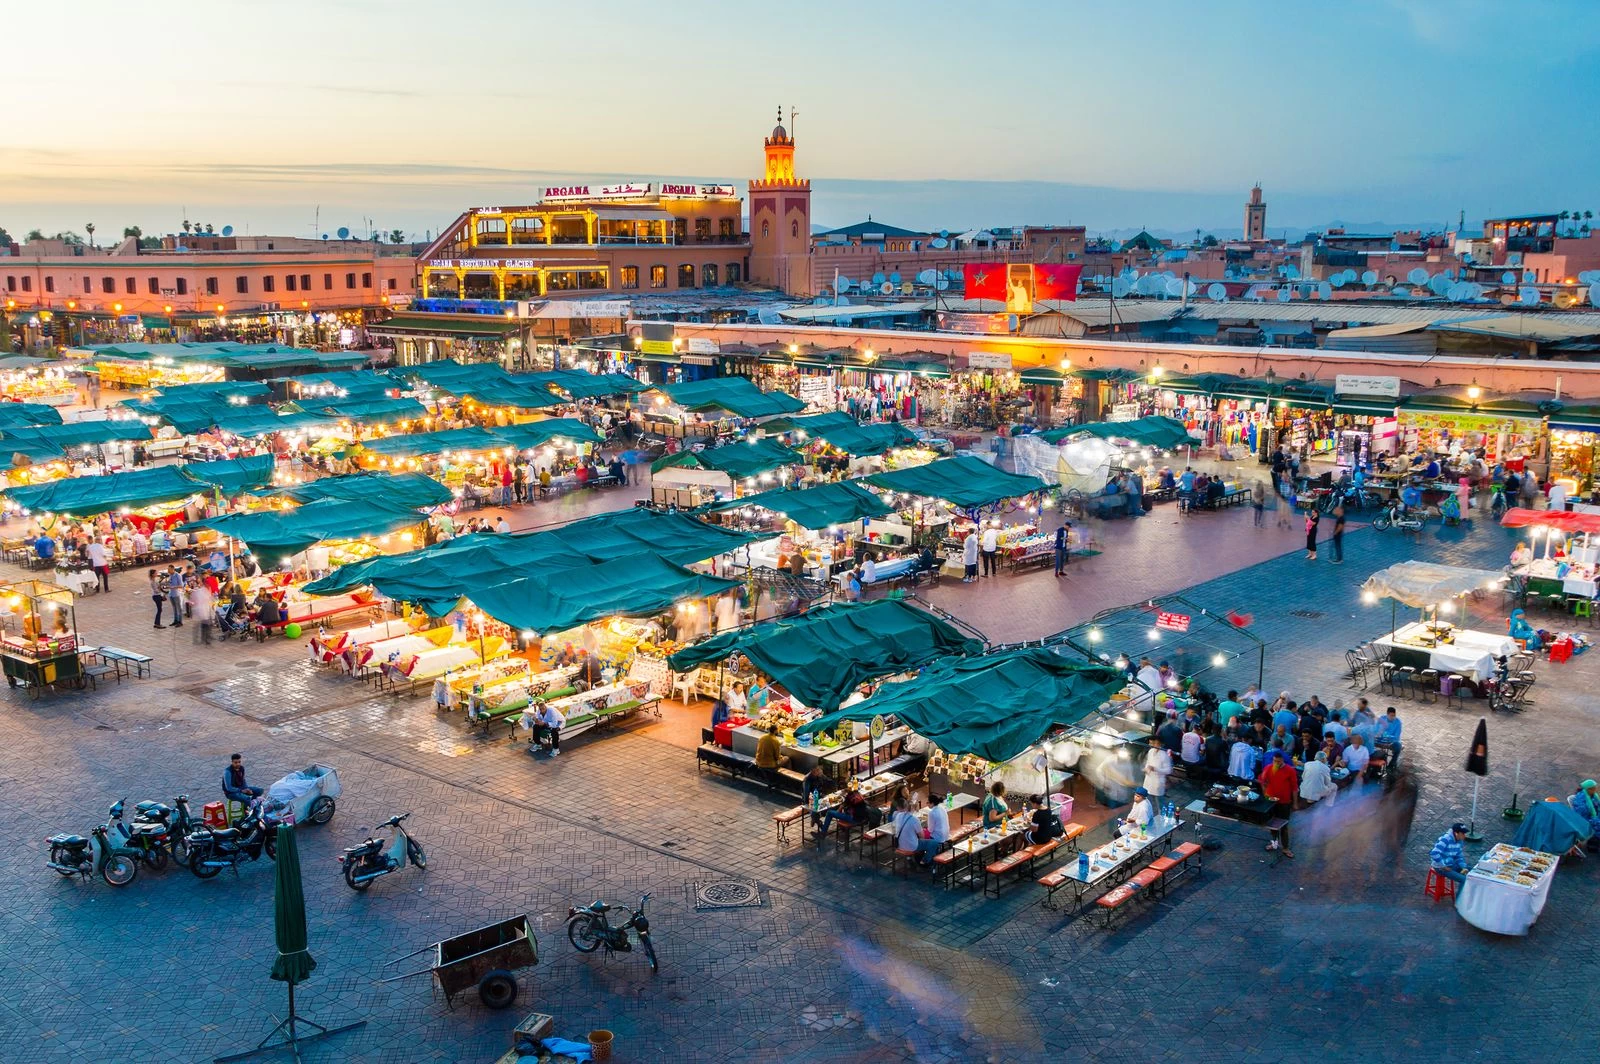 Descubriendo la maravillosa ciudad de Marrakech